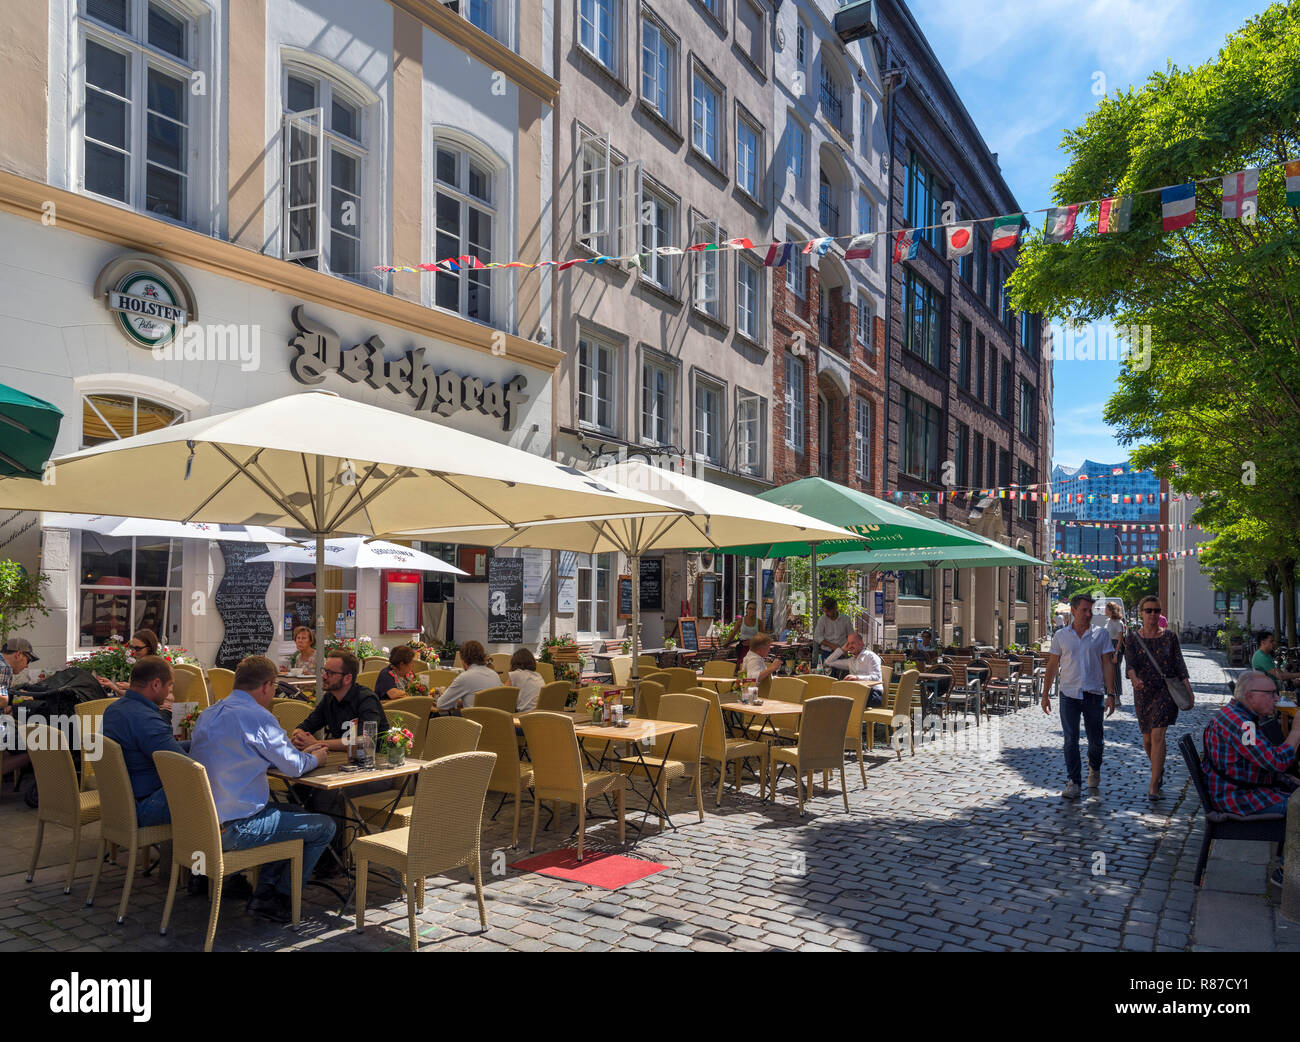 Cafés et bars sur l'historique Deichstrasse (Deichstraße) dans l'Altstadt (vieille ville), Hambourg, Allemagne Banque D'Images